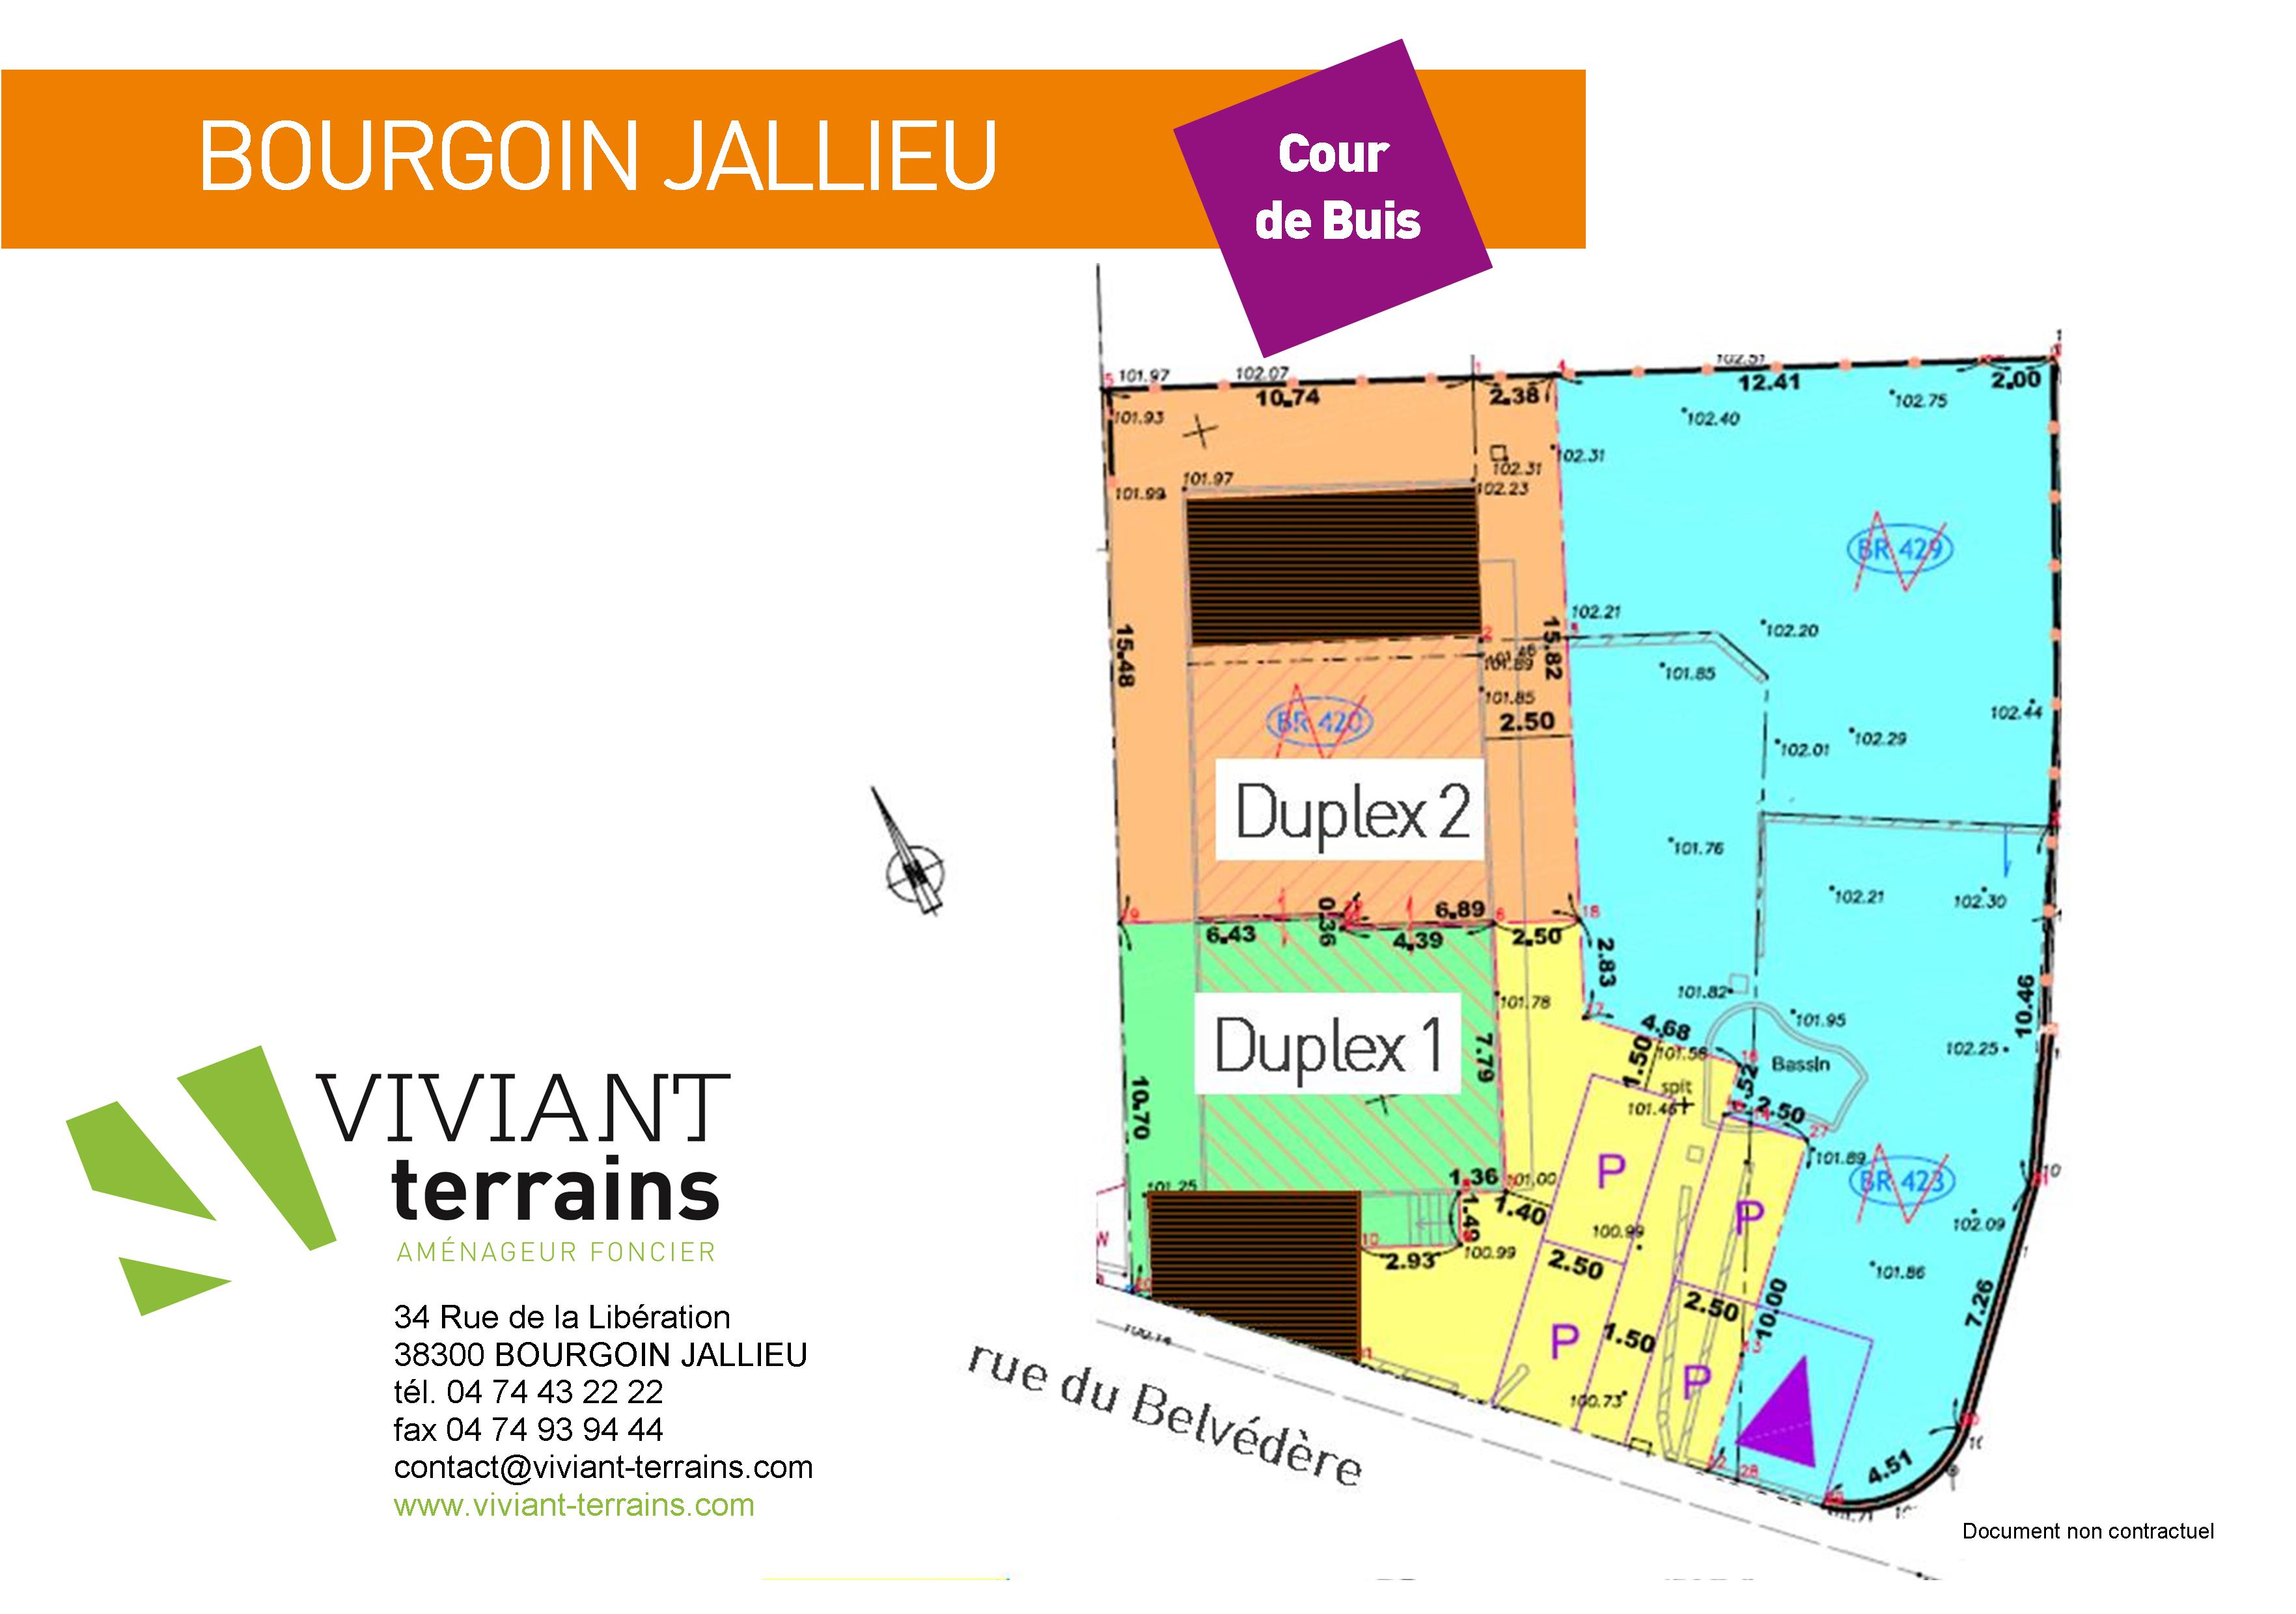 Bourgoin Jallieu cour de Buis maison isere 38 0219